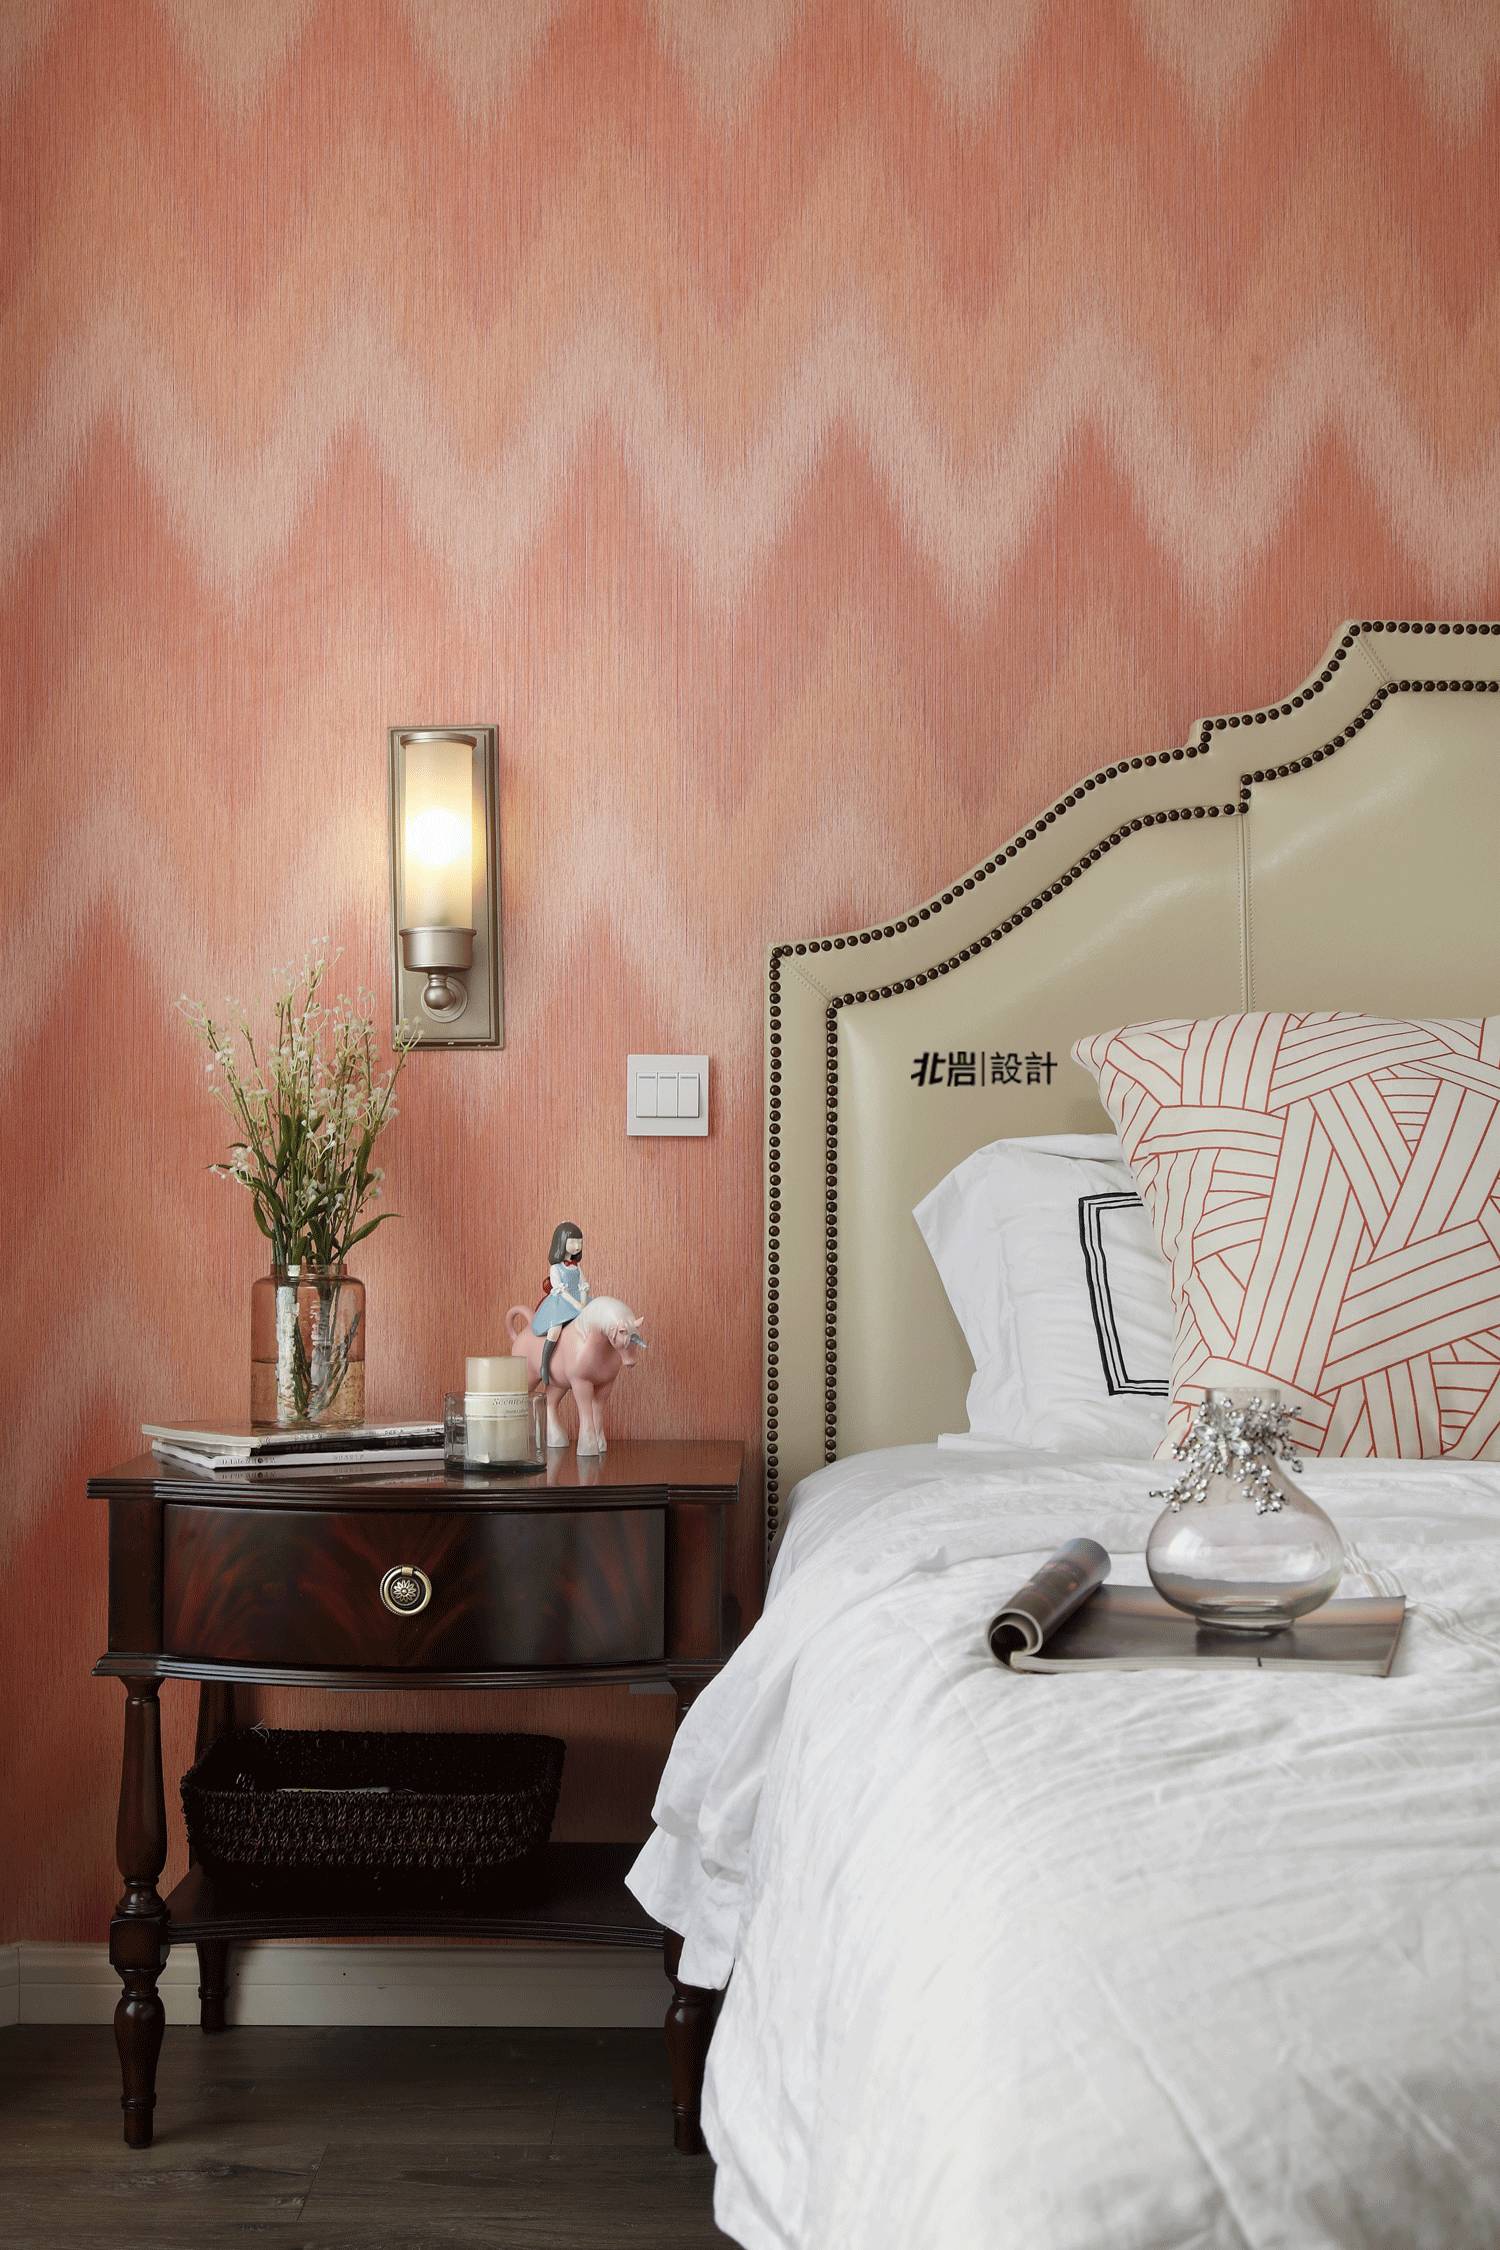 在橘红色壁纸的映衬下,台灯释放处的光线更加柔软温暖,整个房间气质